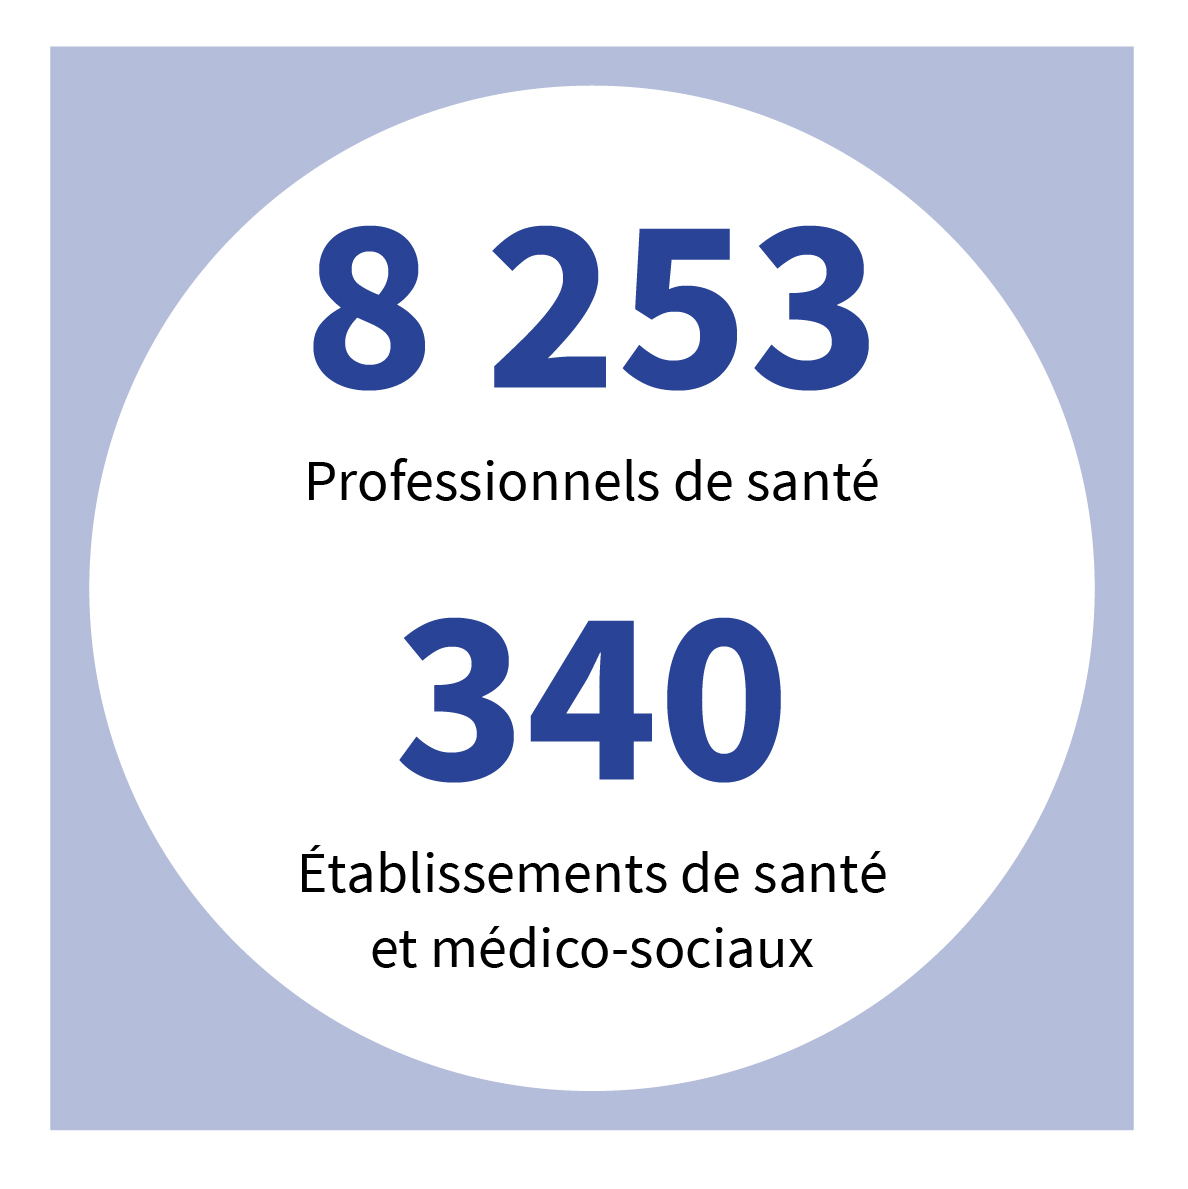 8 253 professionnels de santé - 340 établissements de santé et médico-sociaux